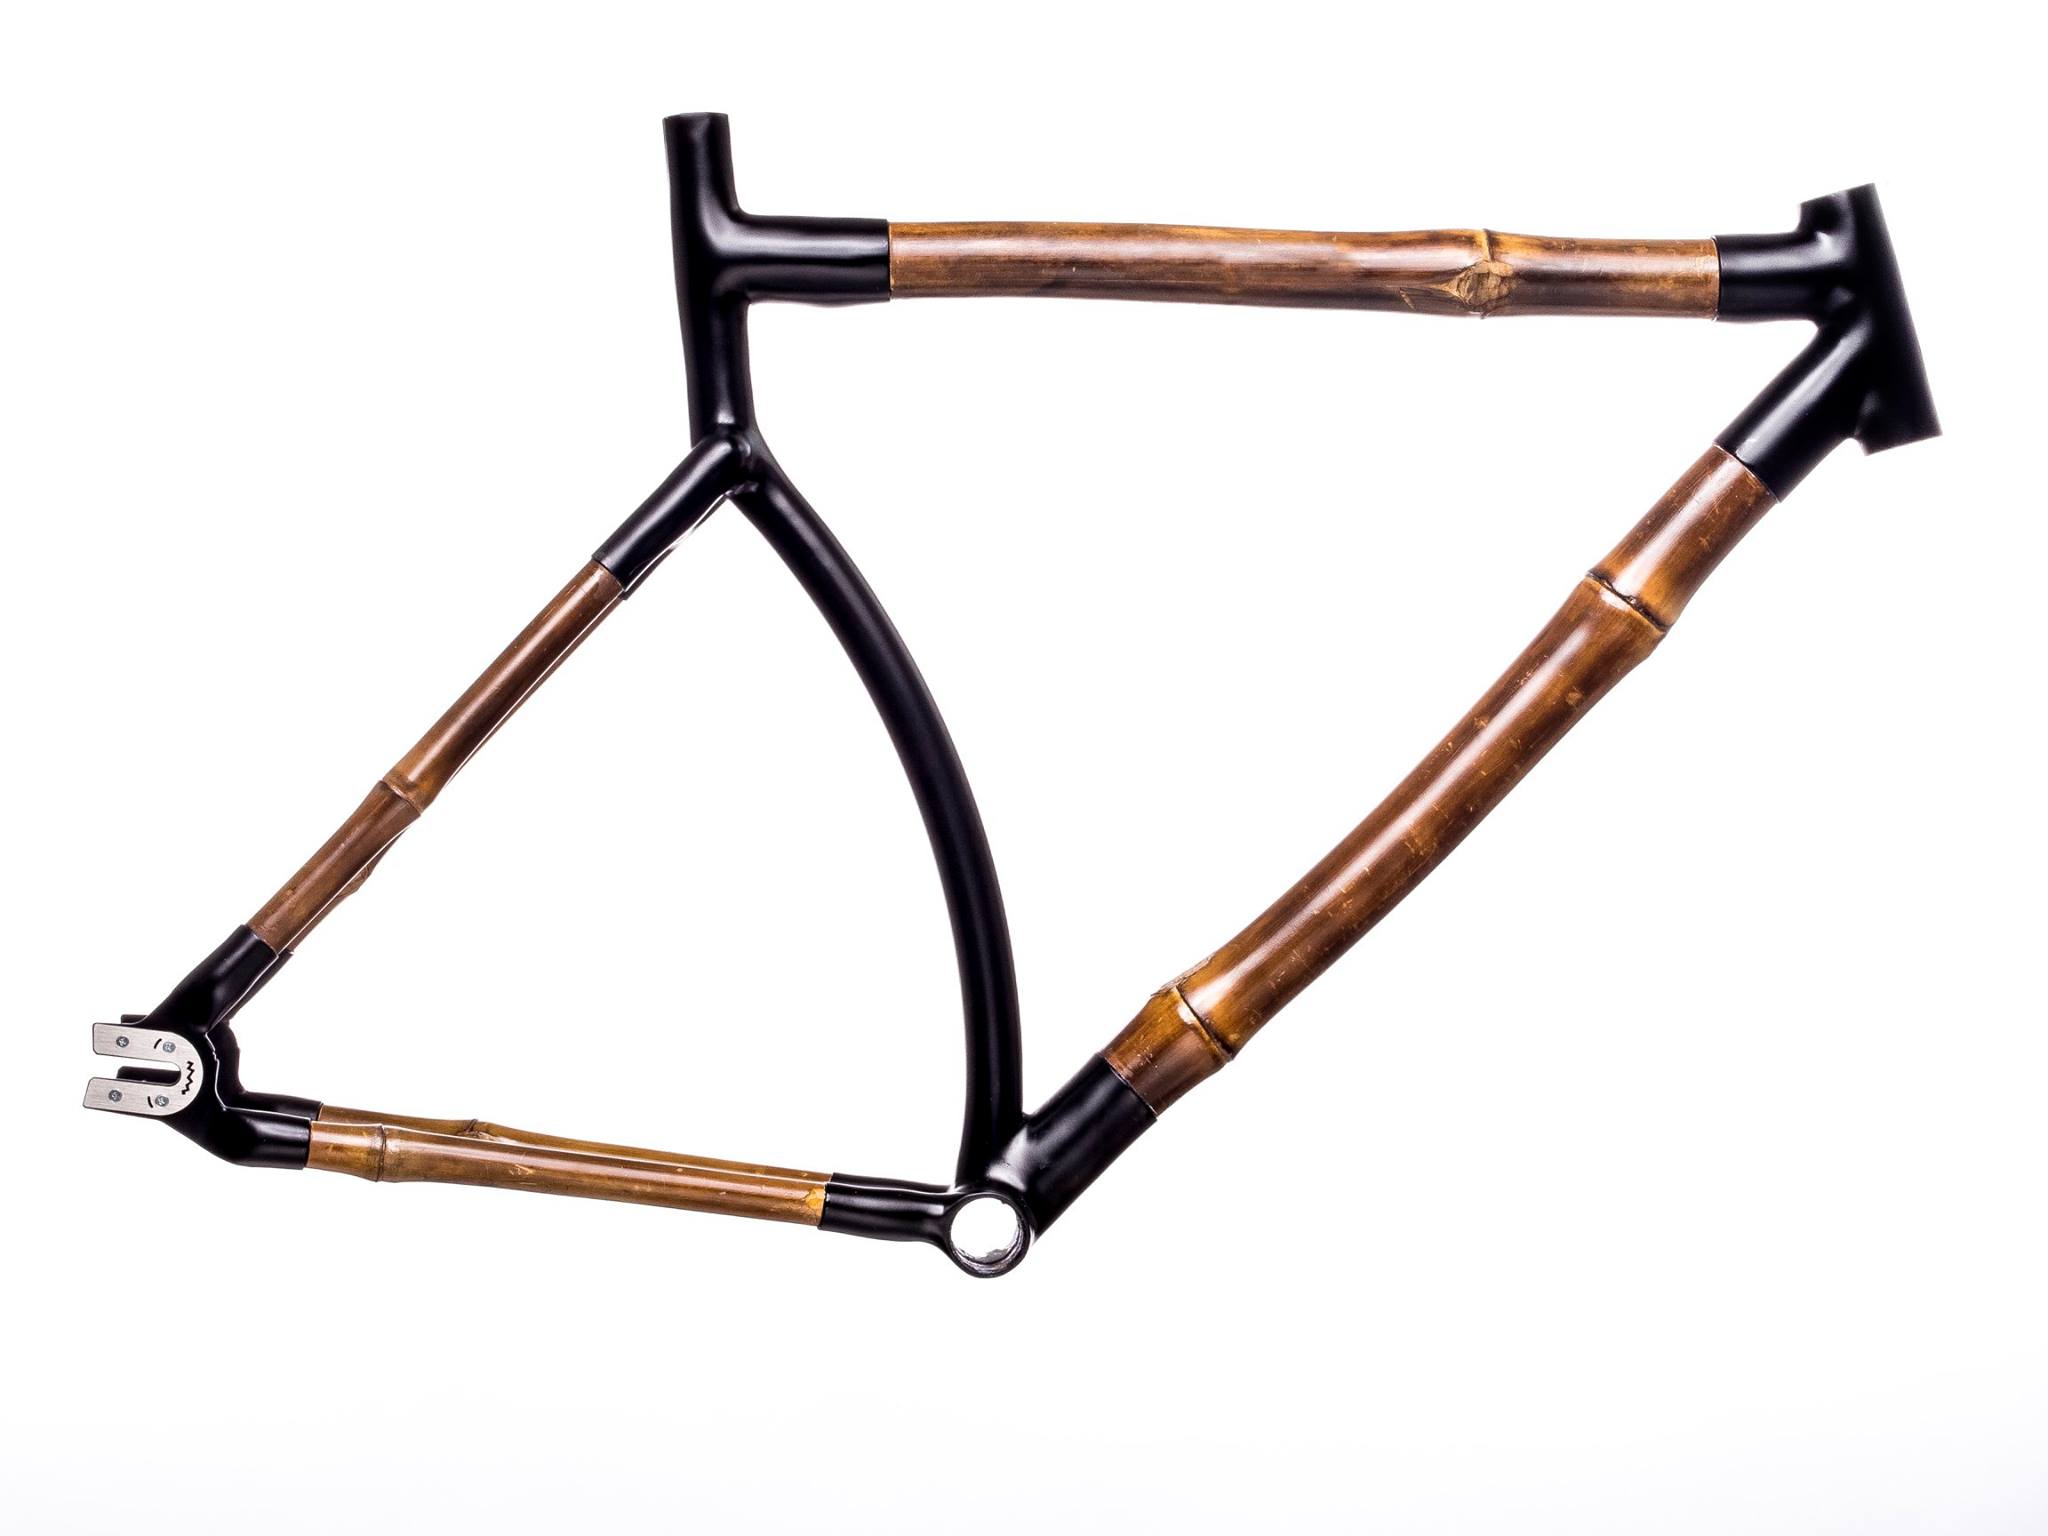 Sehr schön und elegant, der Fahrradrahmen aus Bambus der mexikanischen Firma Bamboocycles.